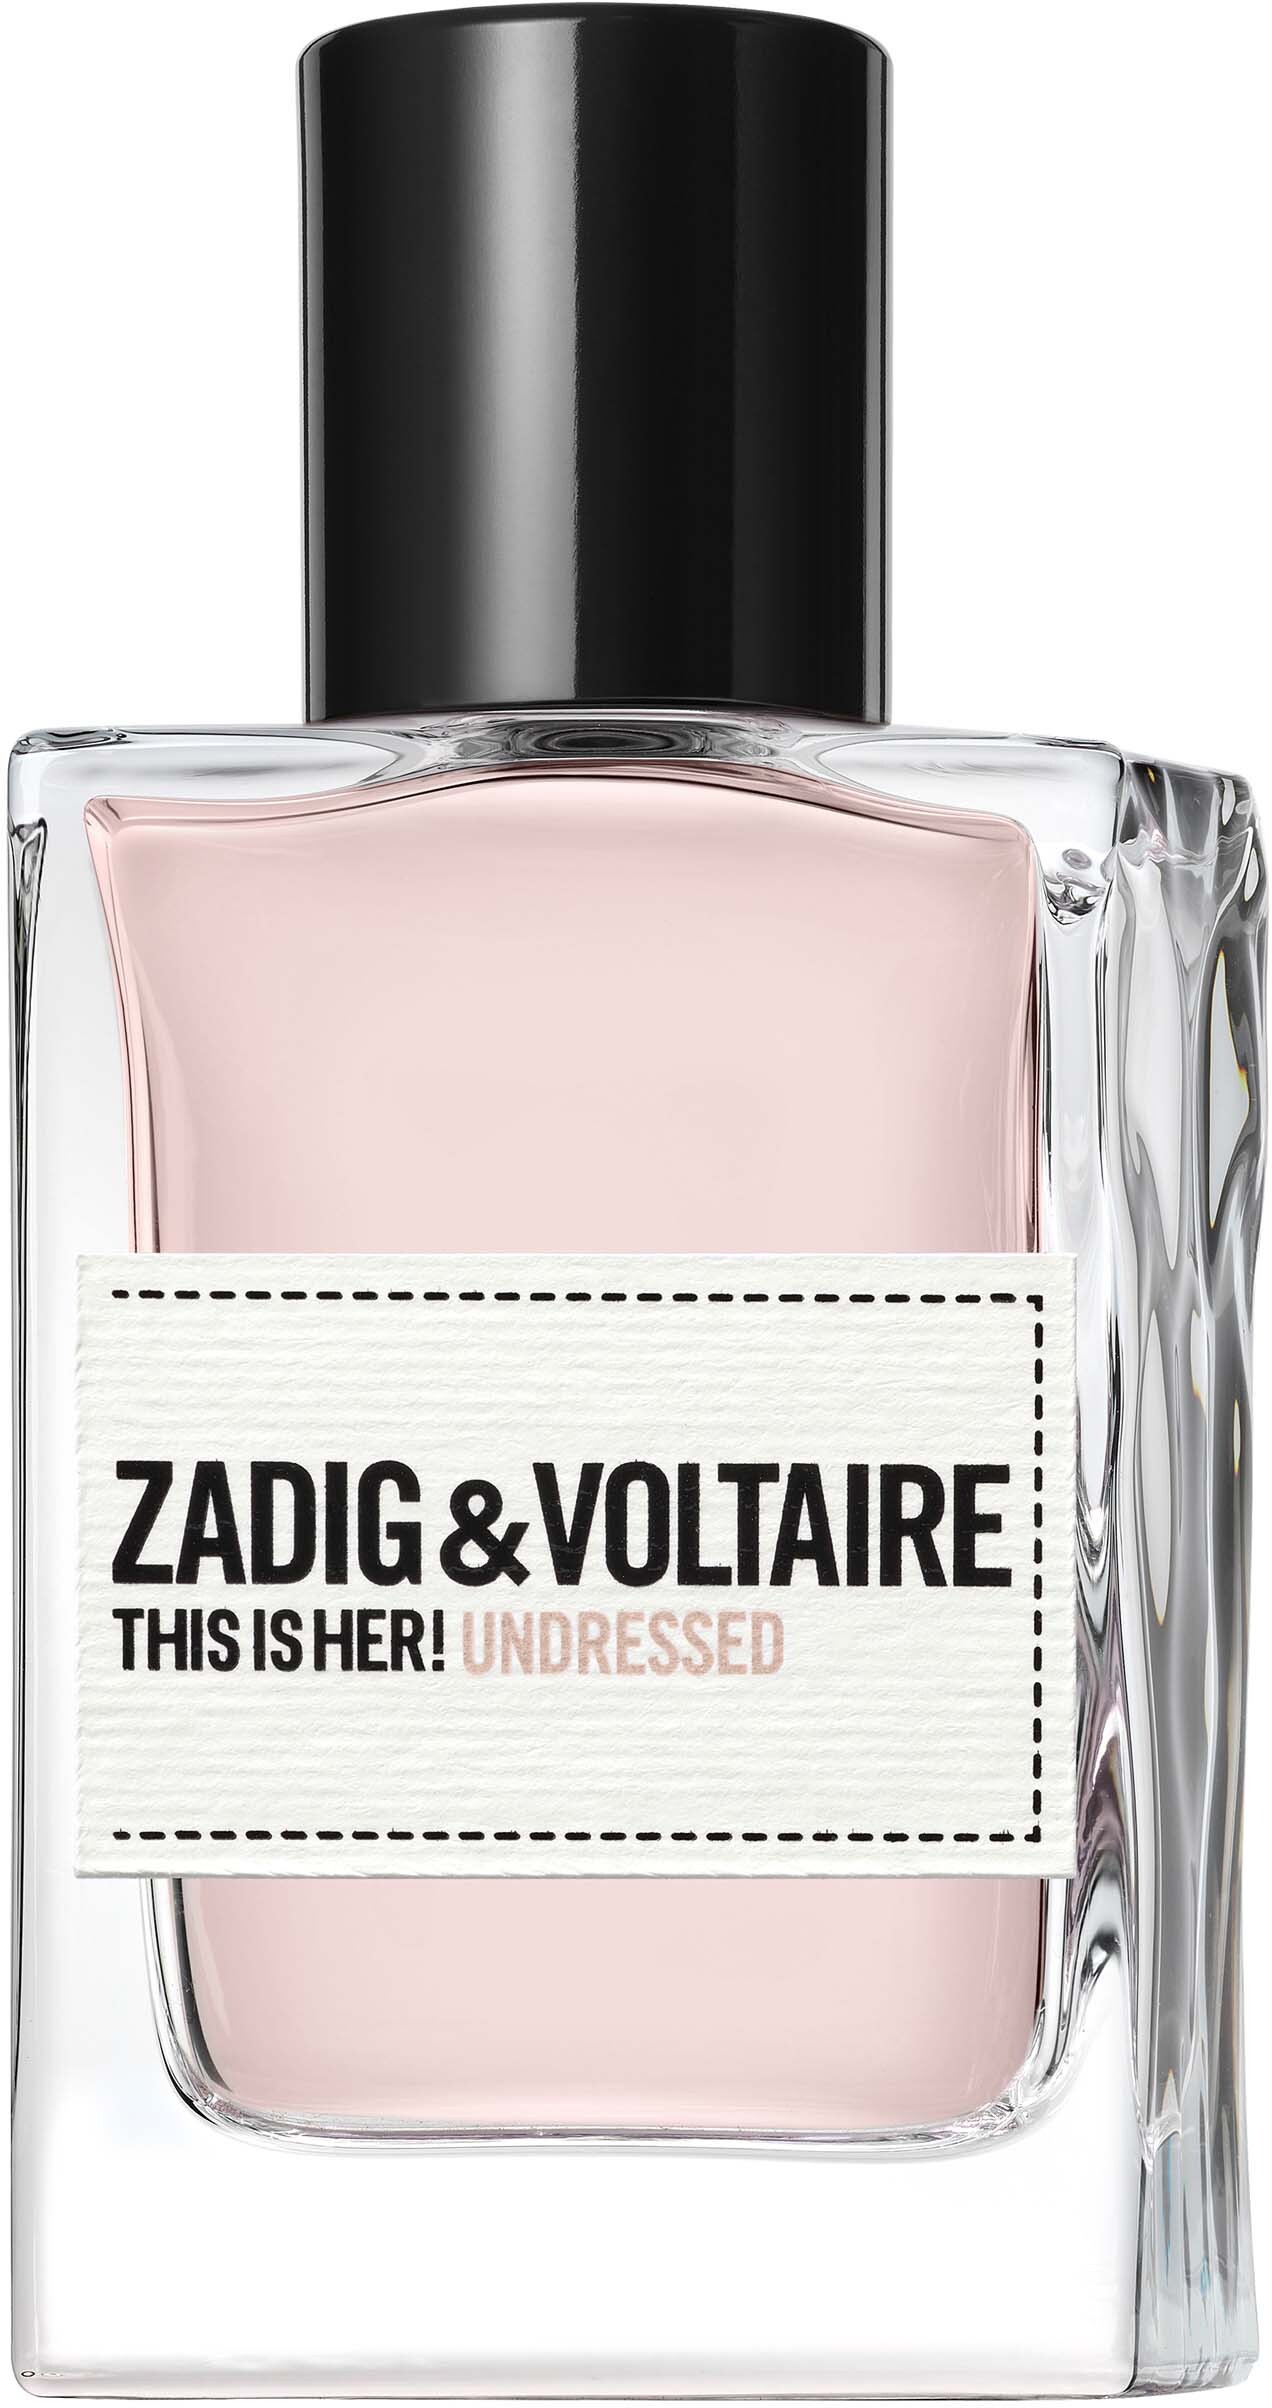 Zadig & Voltaire This is Her! Undressed Eau de Parfum 30 ml